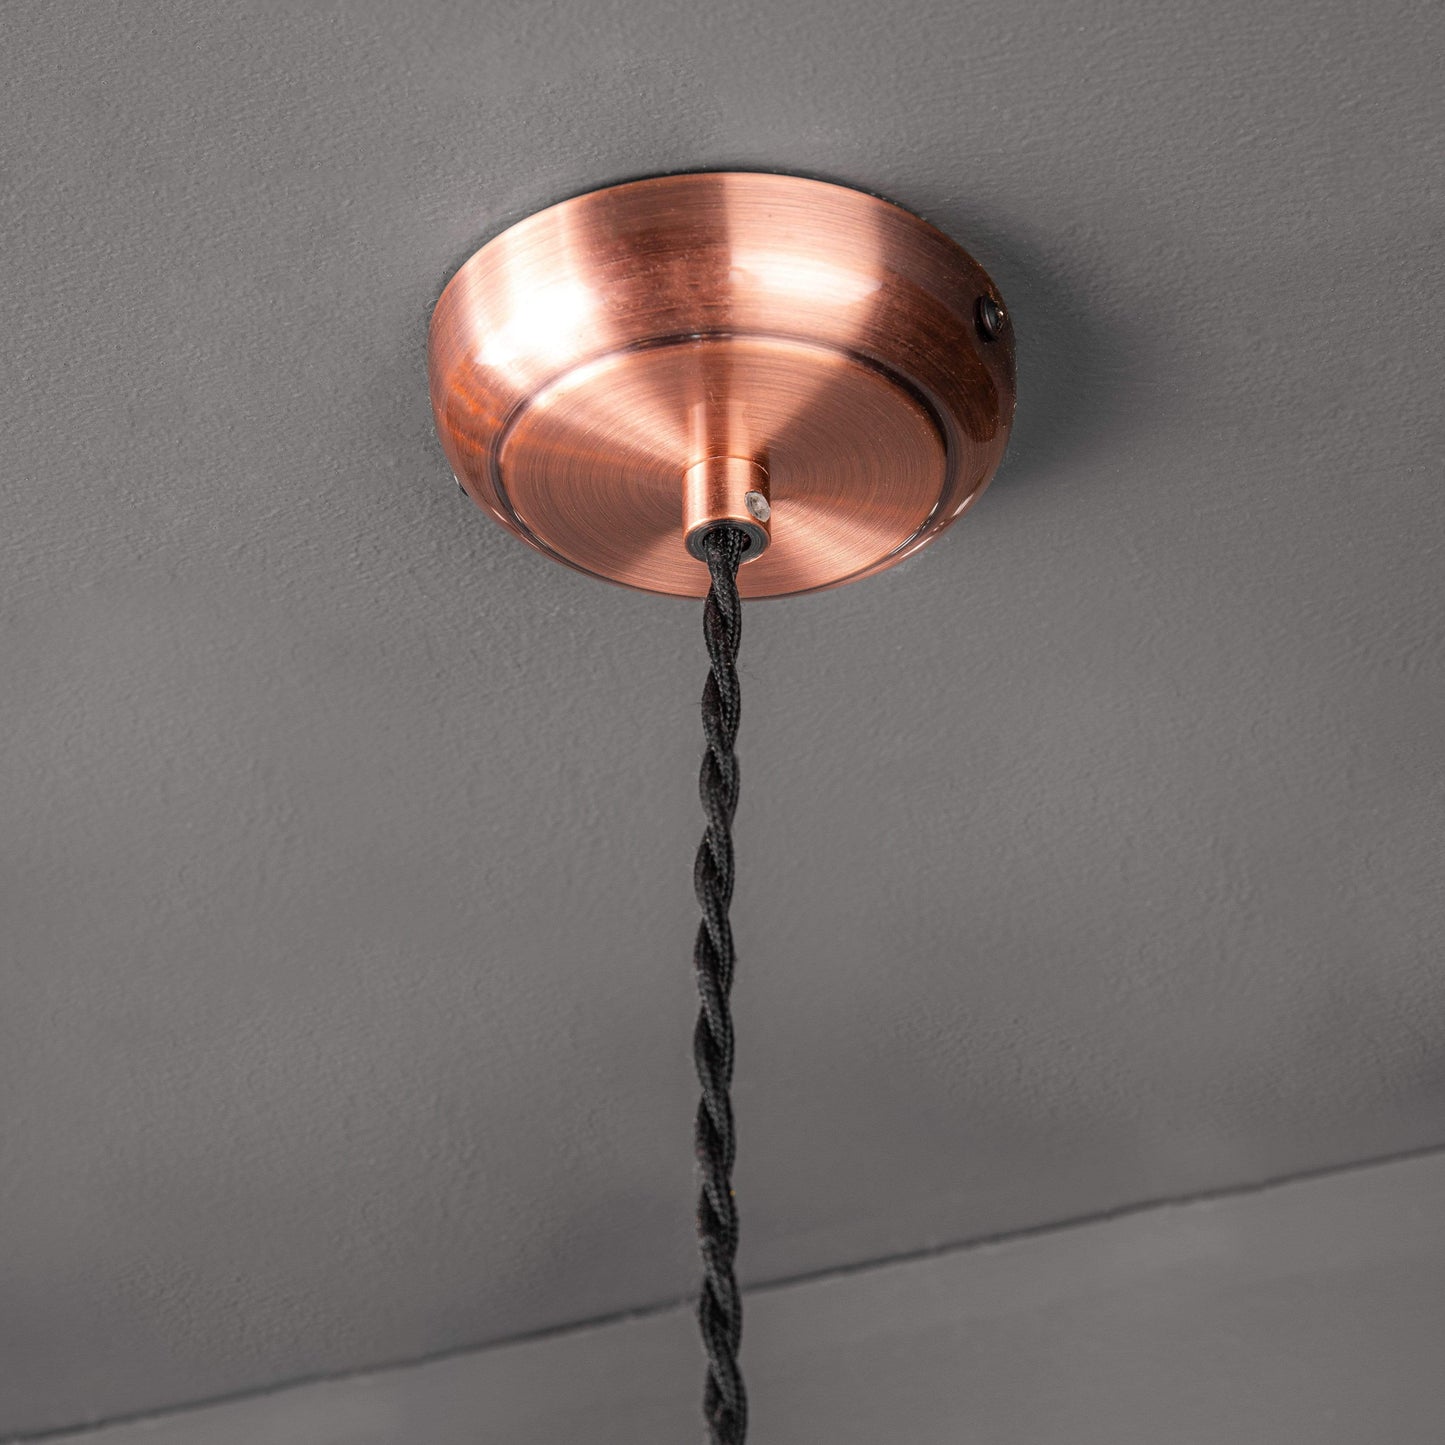 Lights  -  Dale Antique Copper Cable Suspension Ceiling Light  -  50150531